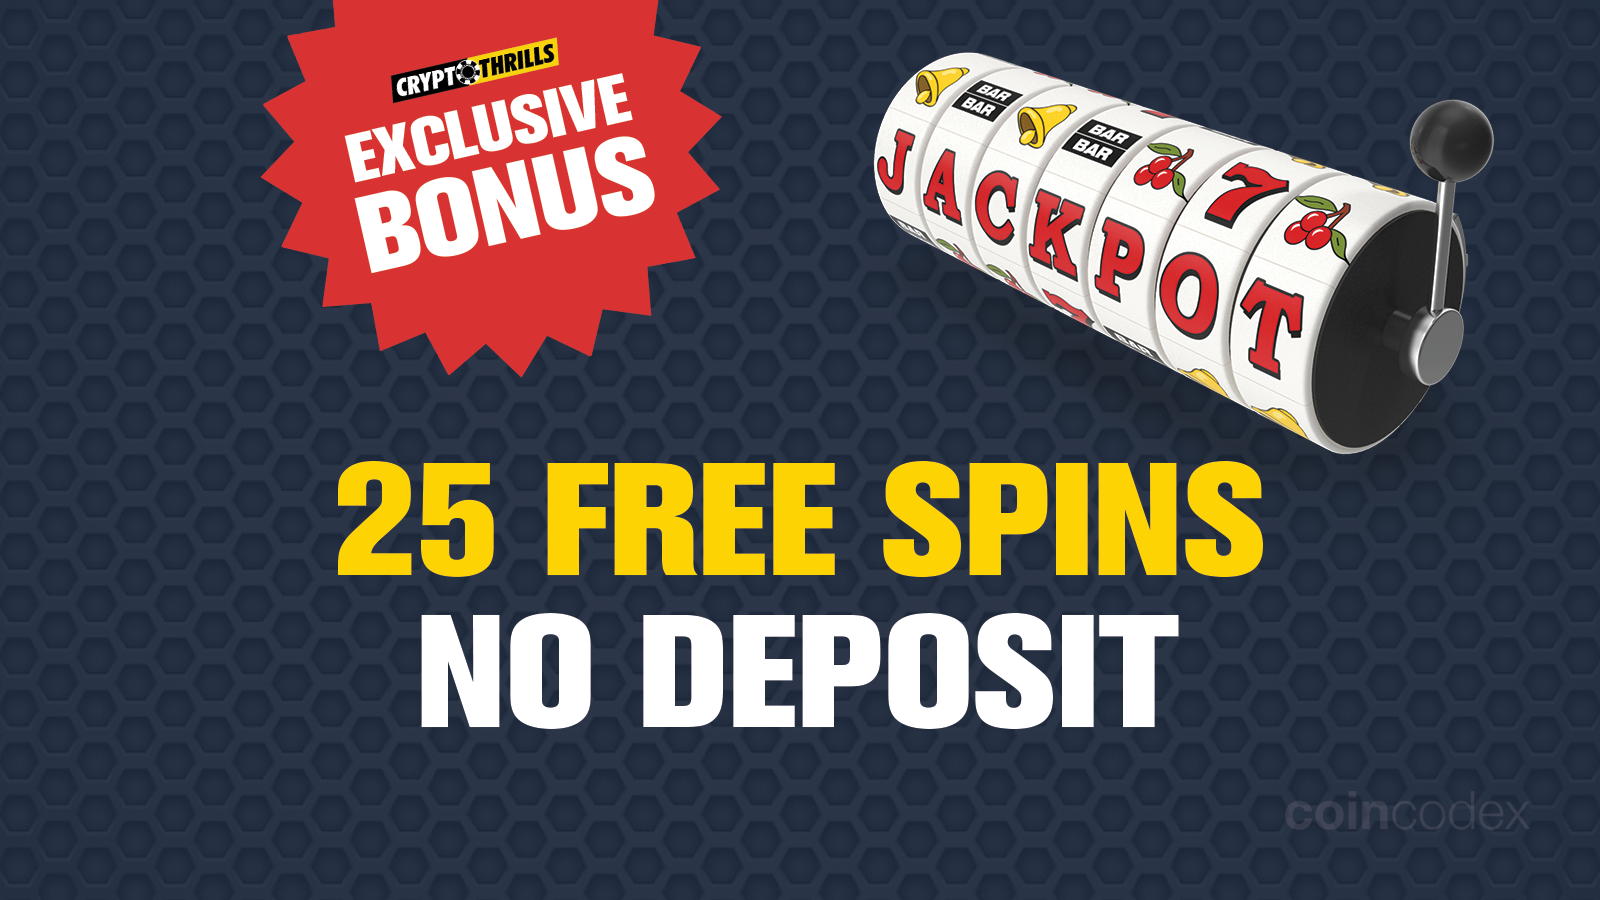 Exclusive Bitcoin Casino No Deposit Bonuses | coinlog.fun